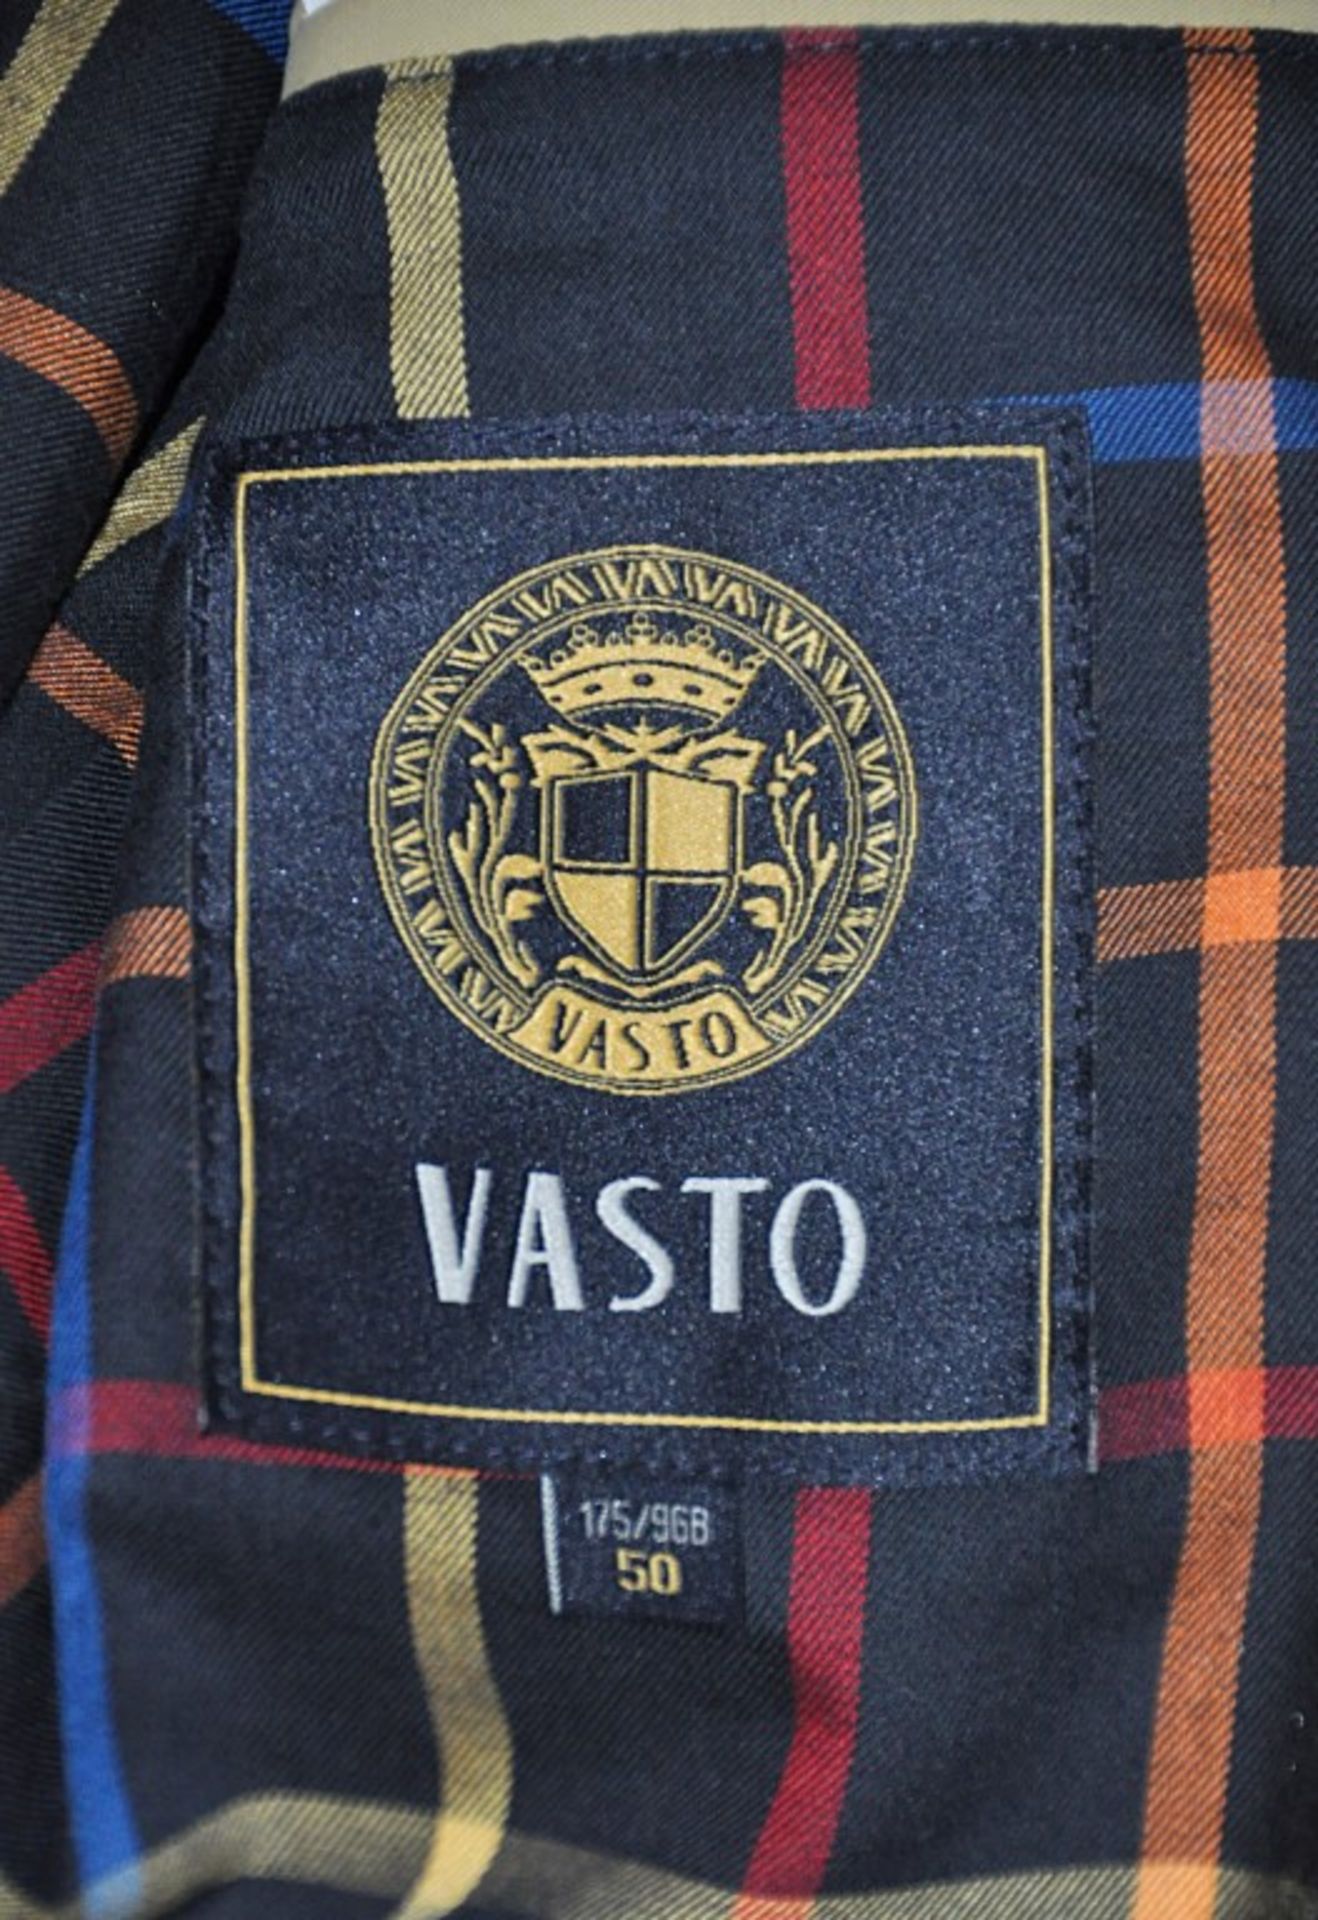 1 x Men's Trench Coat / Long Jacket By International Luxury Brand "Vasto" (BAD7107) – Size: Extra - Image 3 of 6